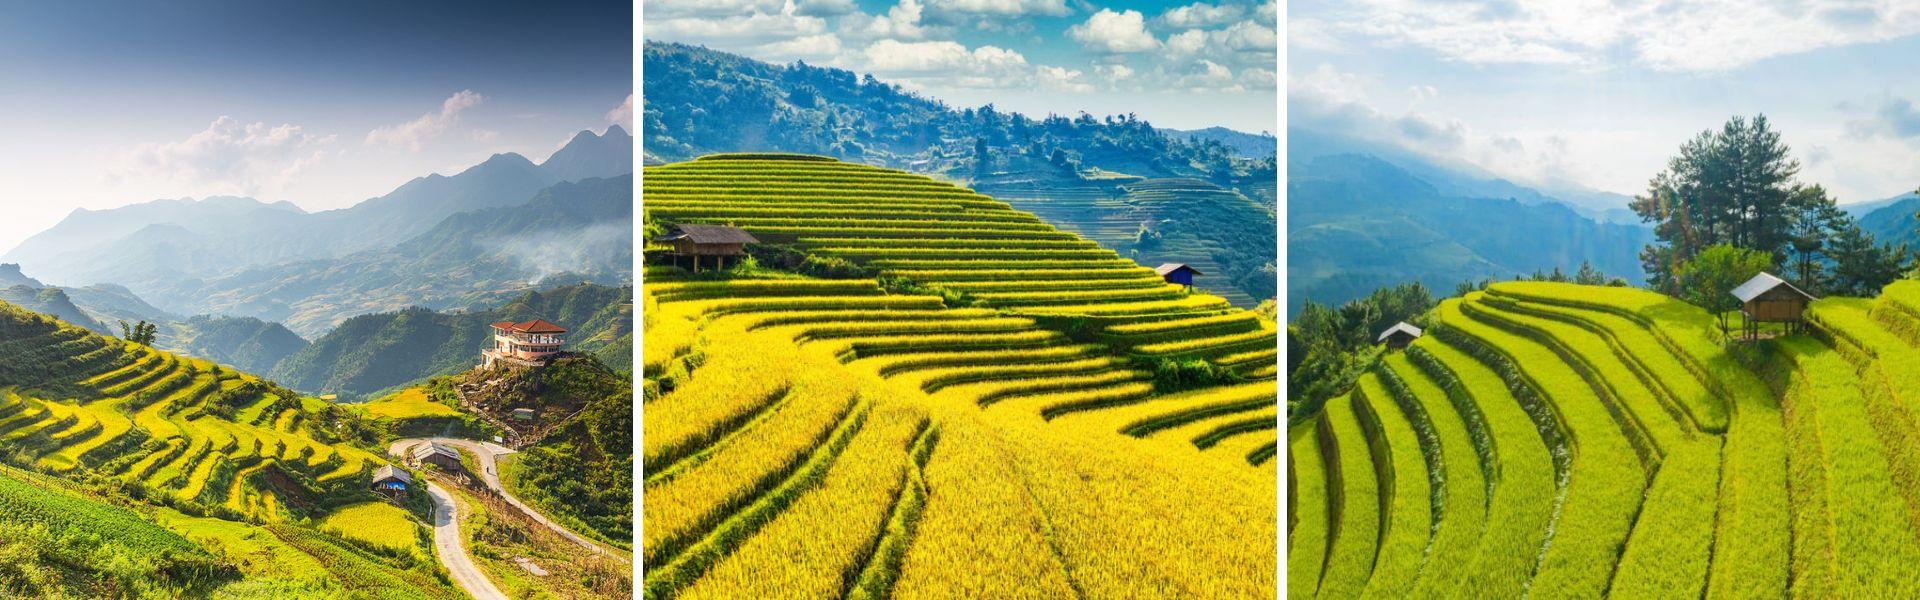 Alla scoperta delle terrazze di riso in Vietnam del Nord